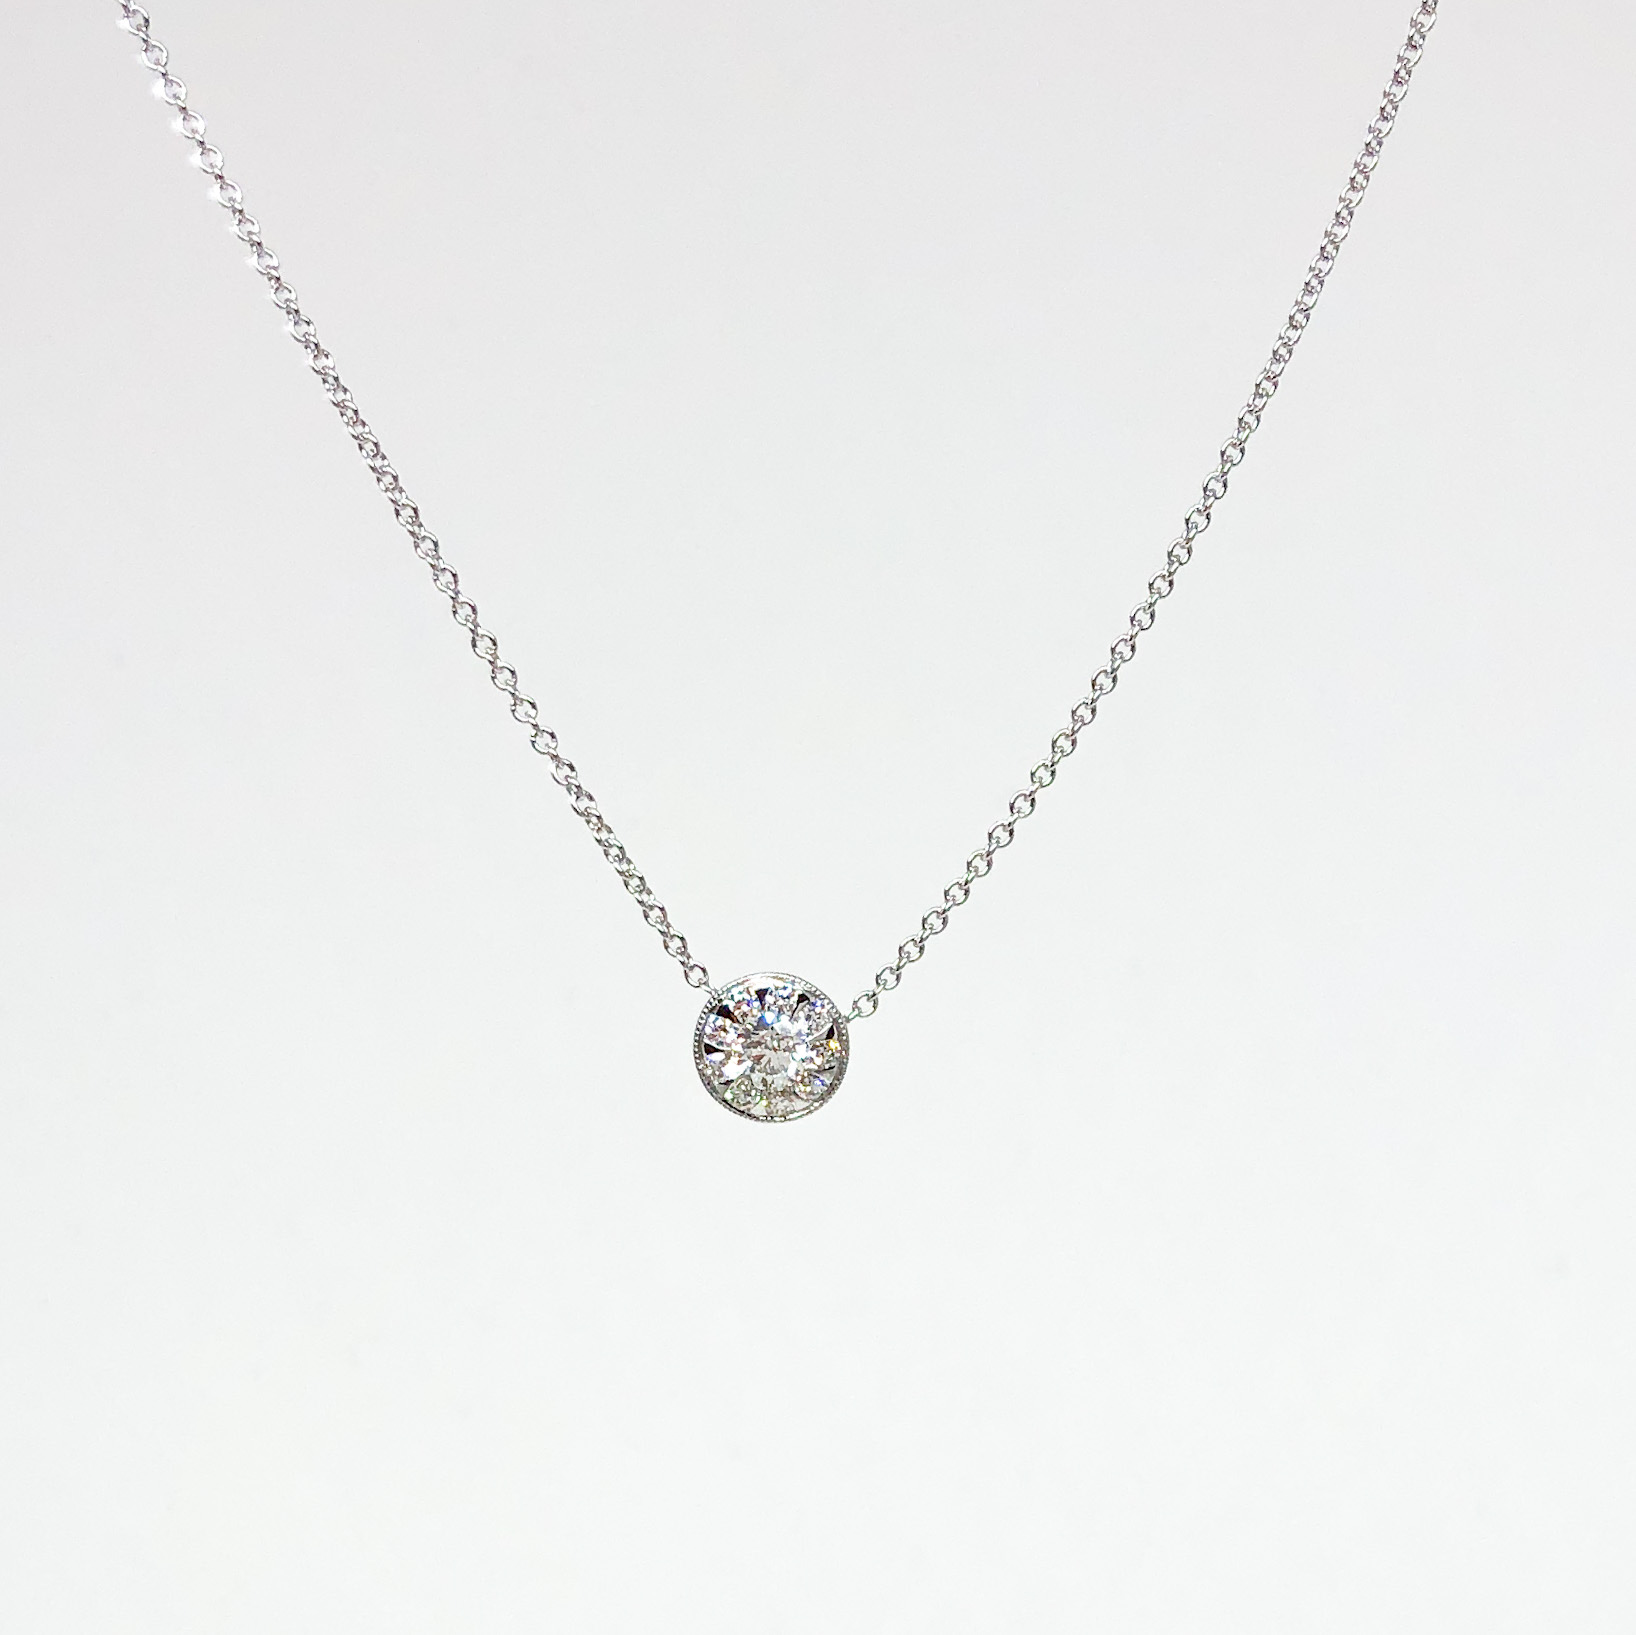 White Gold and Sunburst Diamond Necklace | Von Bargen's Jewelry